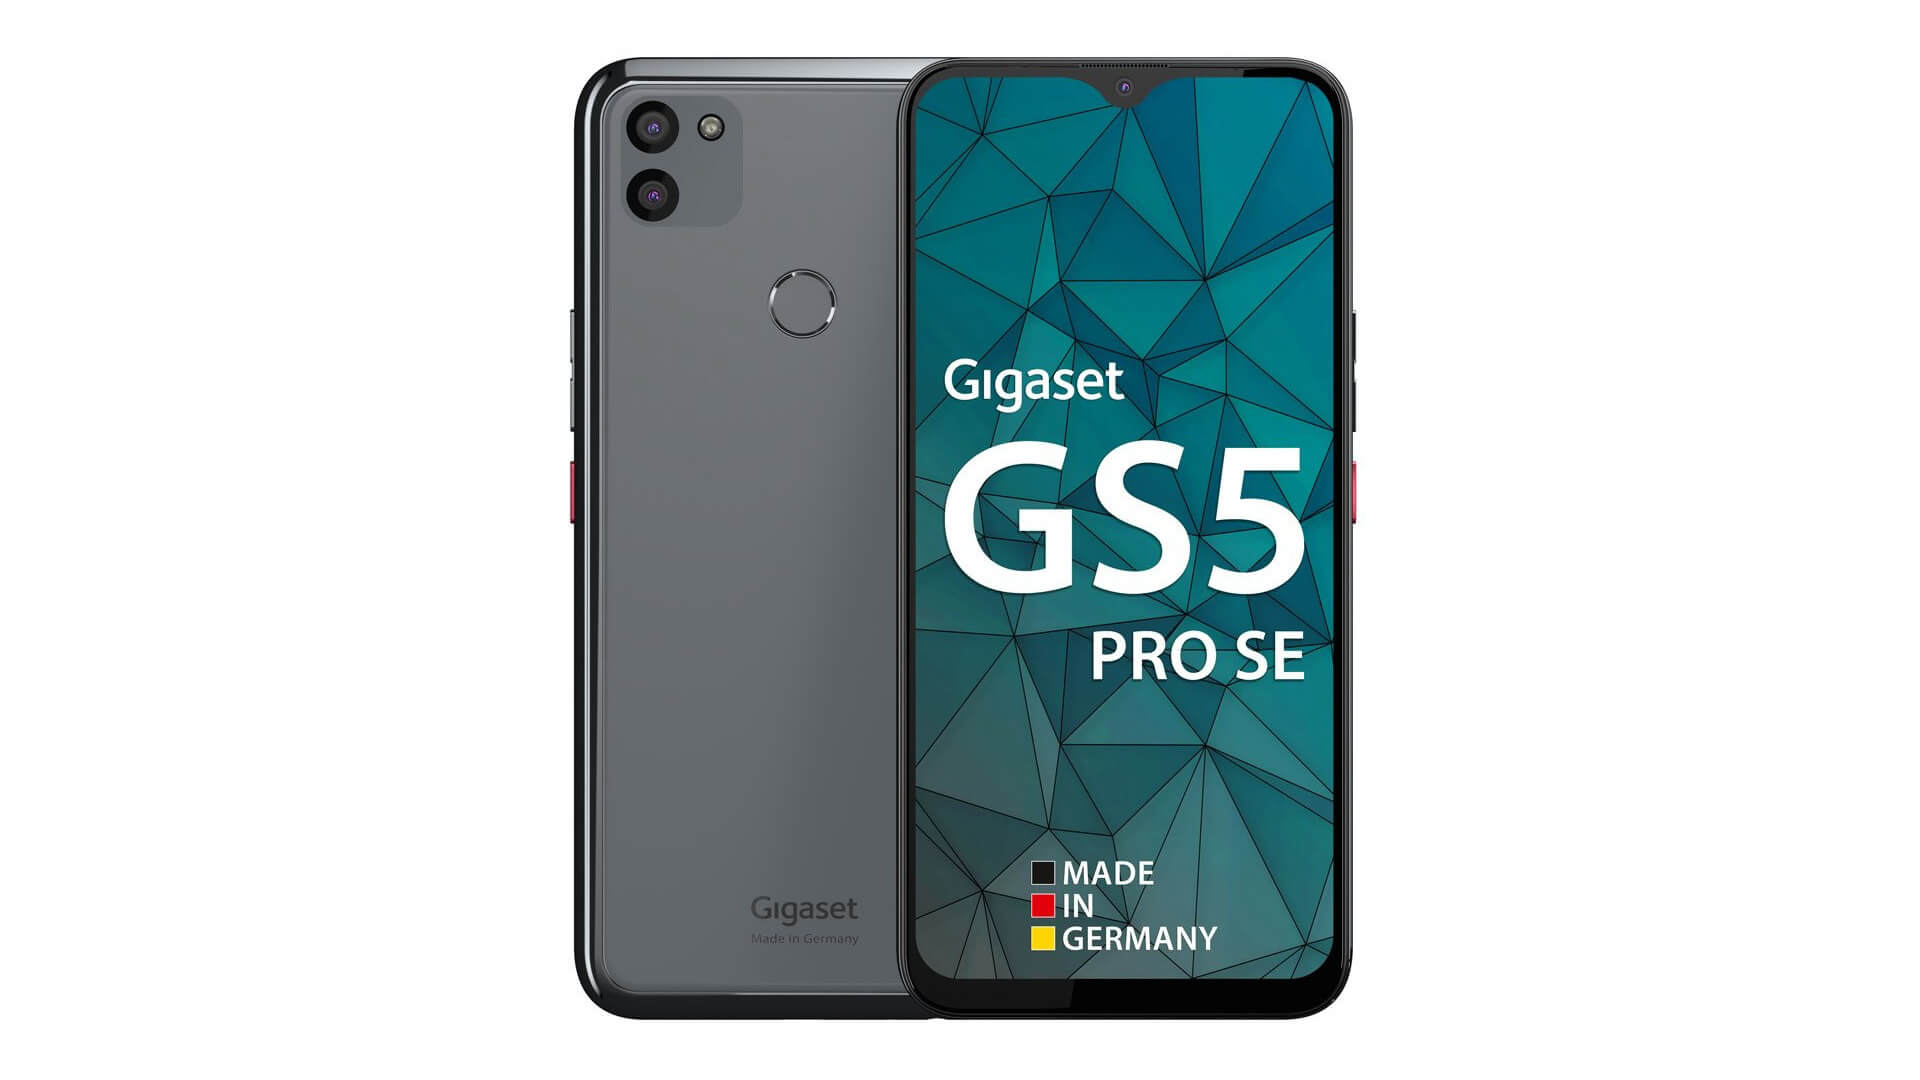 Gigaset GS5 Pro SE